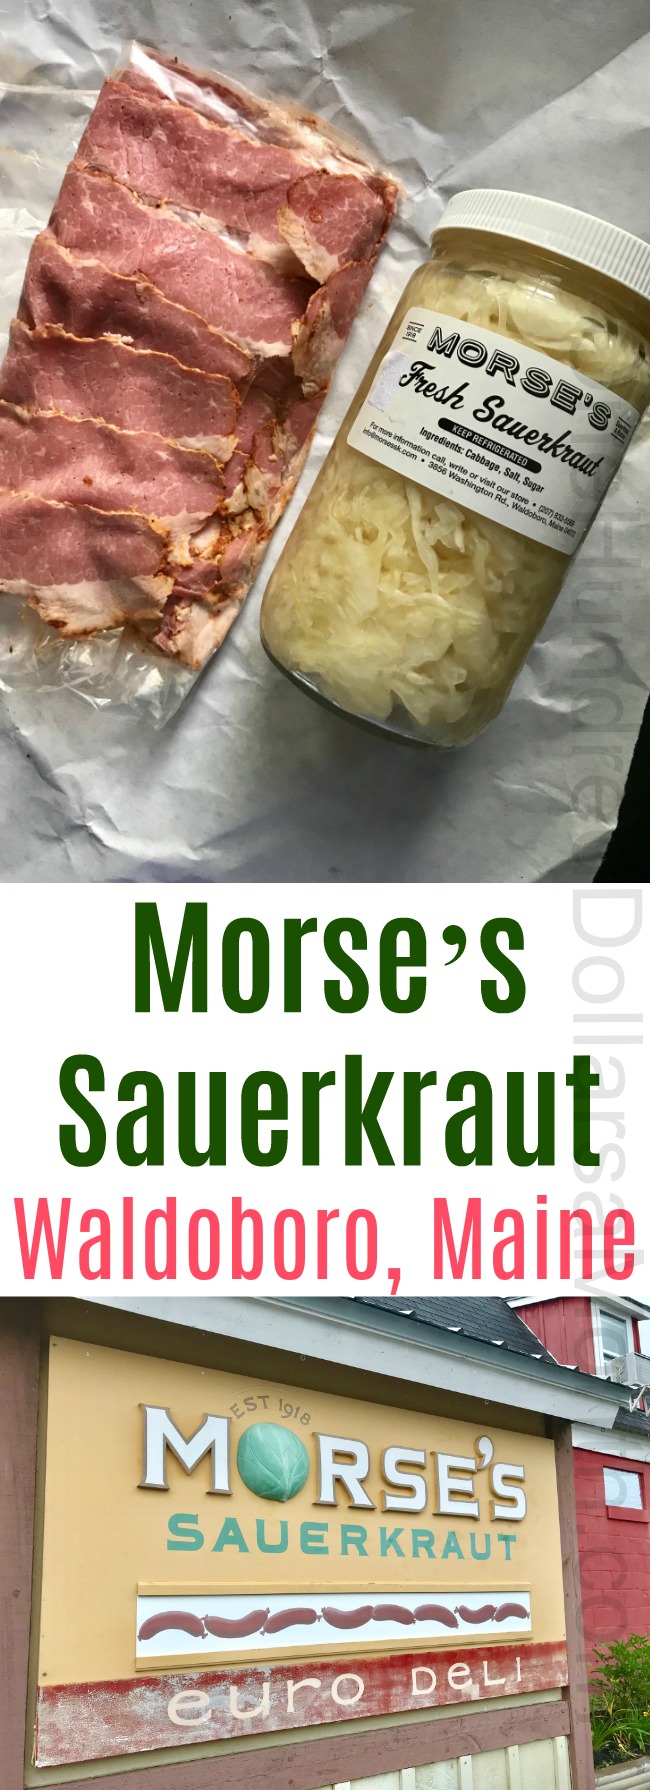 Morse’s Sauerkraut in Waldoboro, Maine